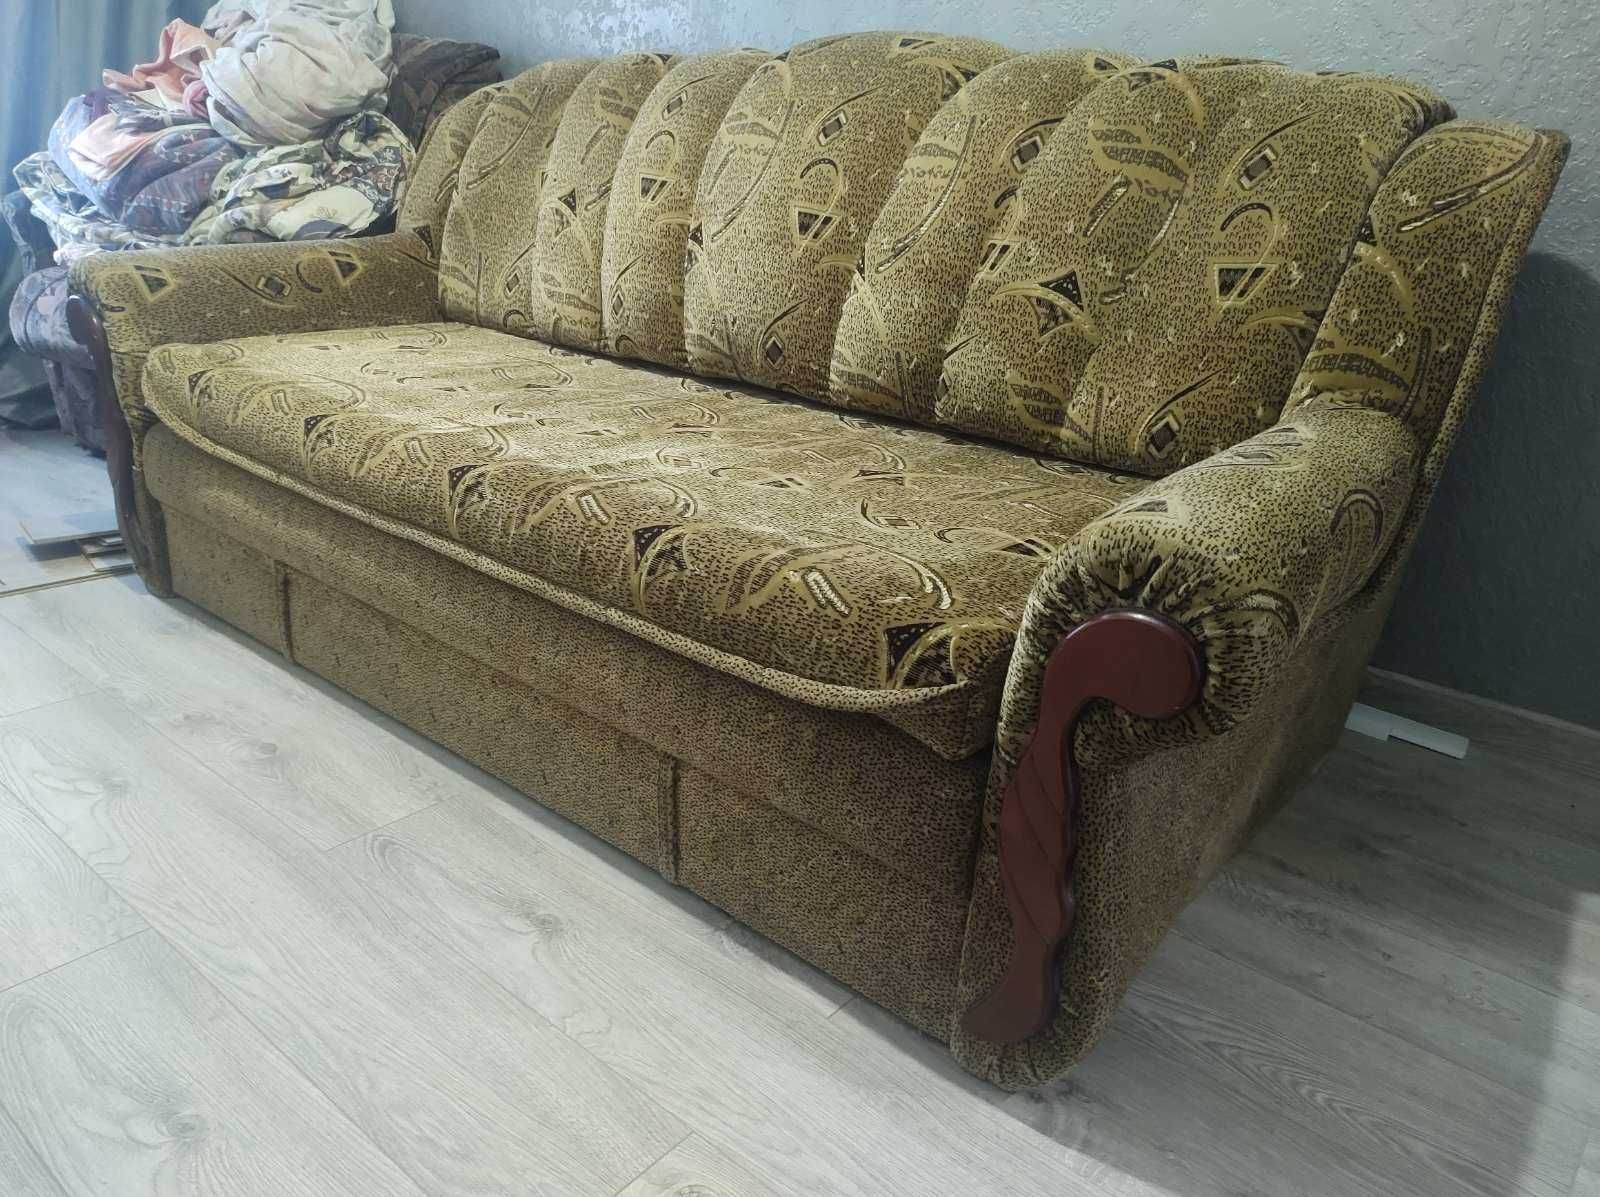 практически Новый диван в идеальном состоянии на ламелях Доставка.